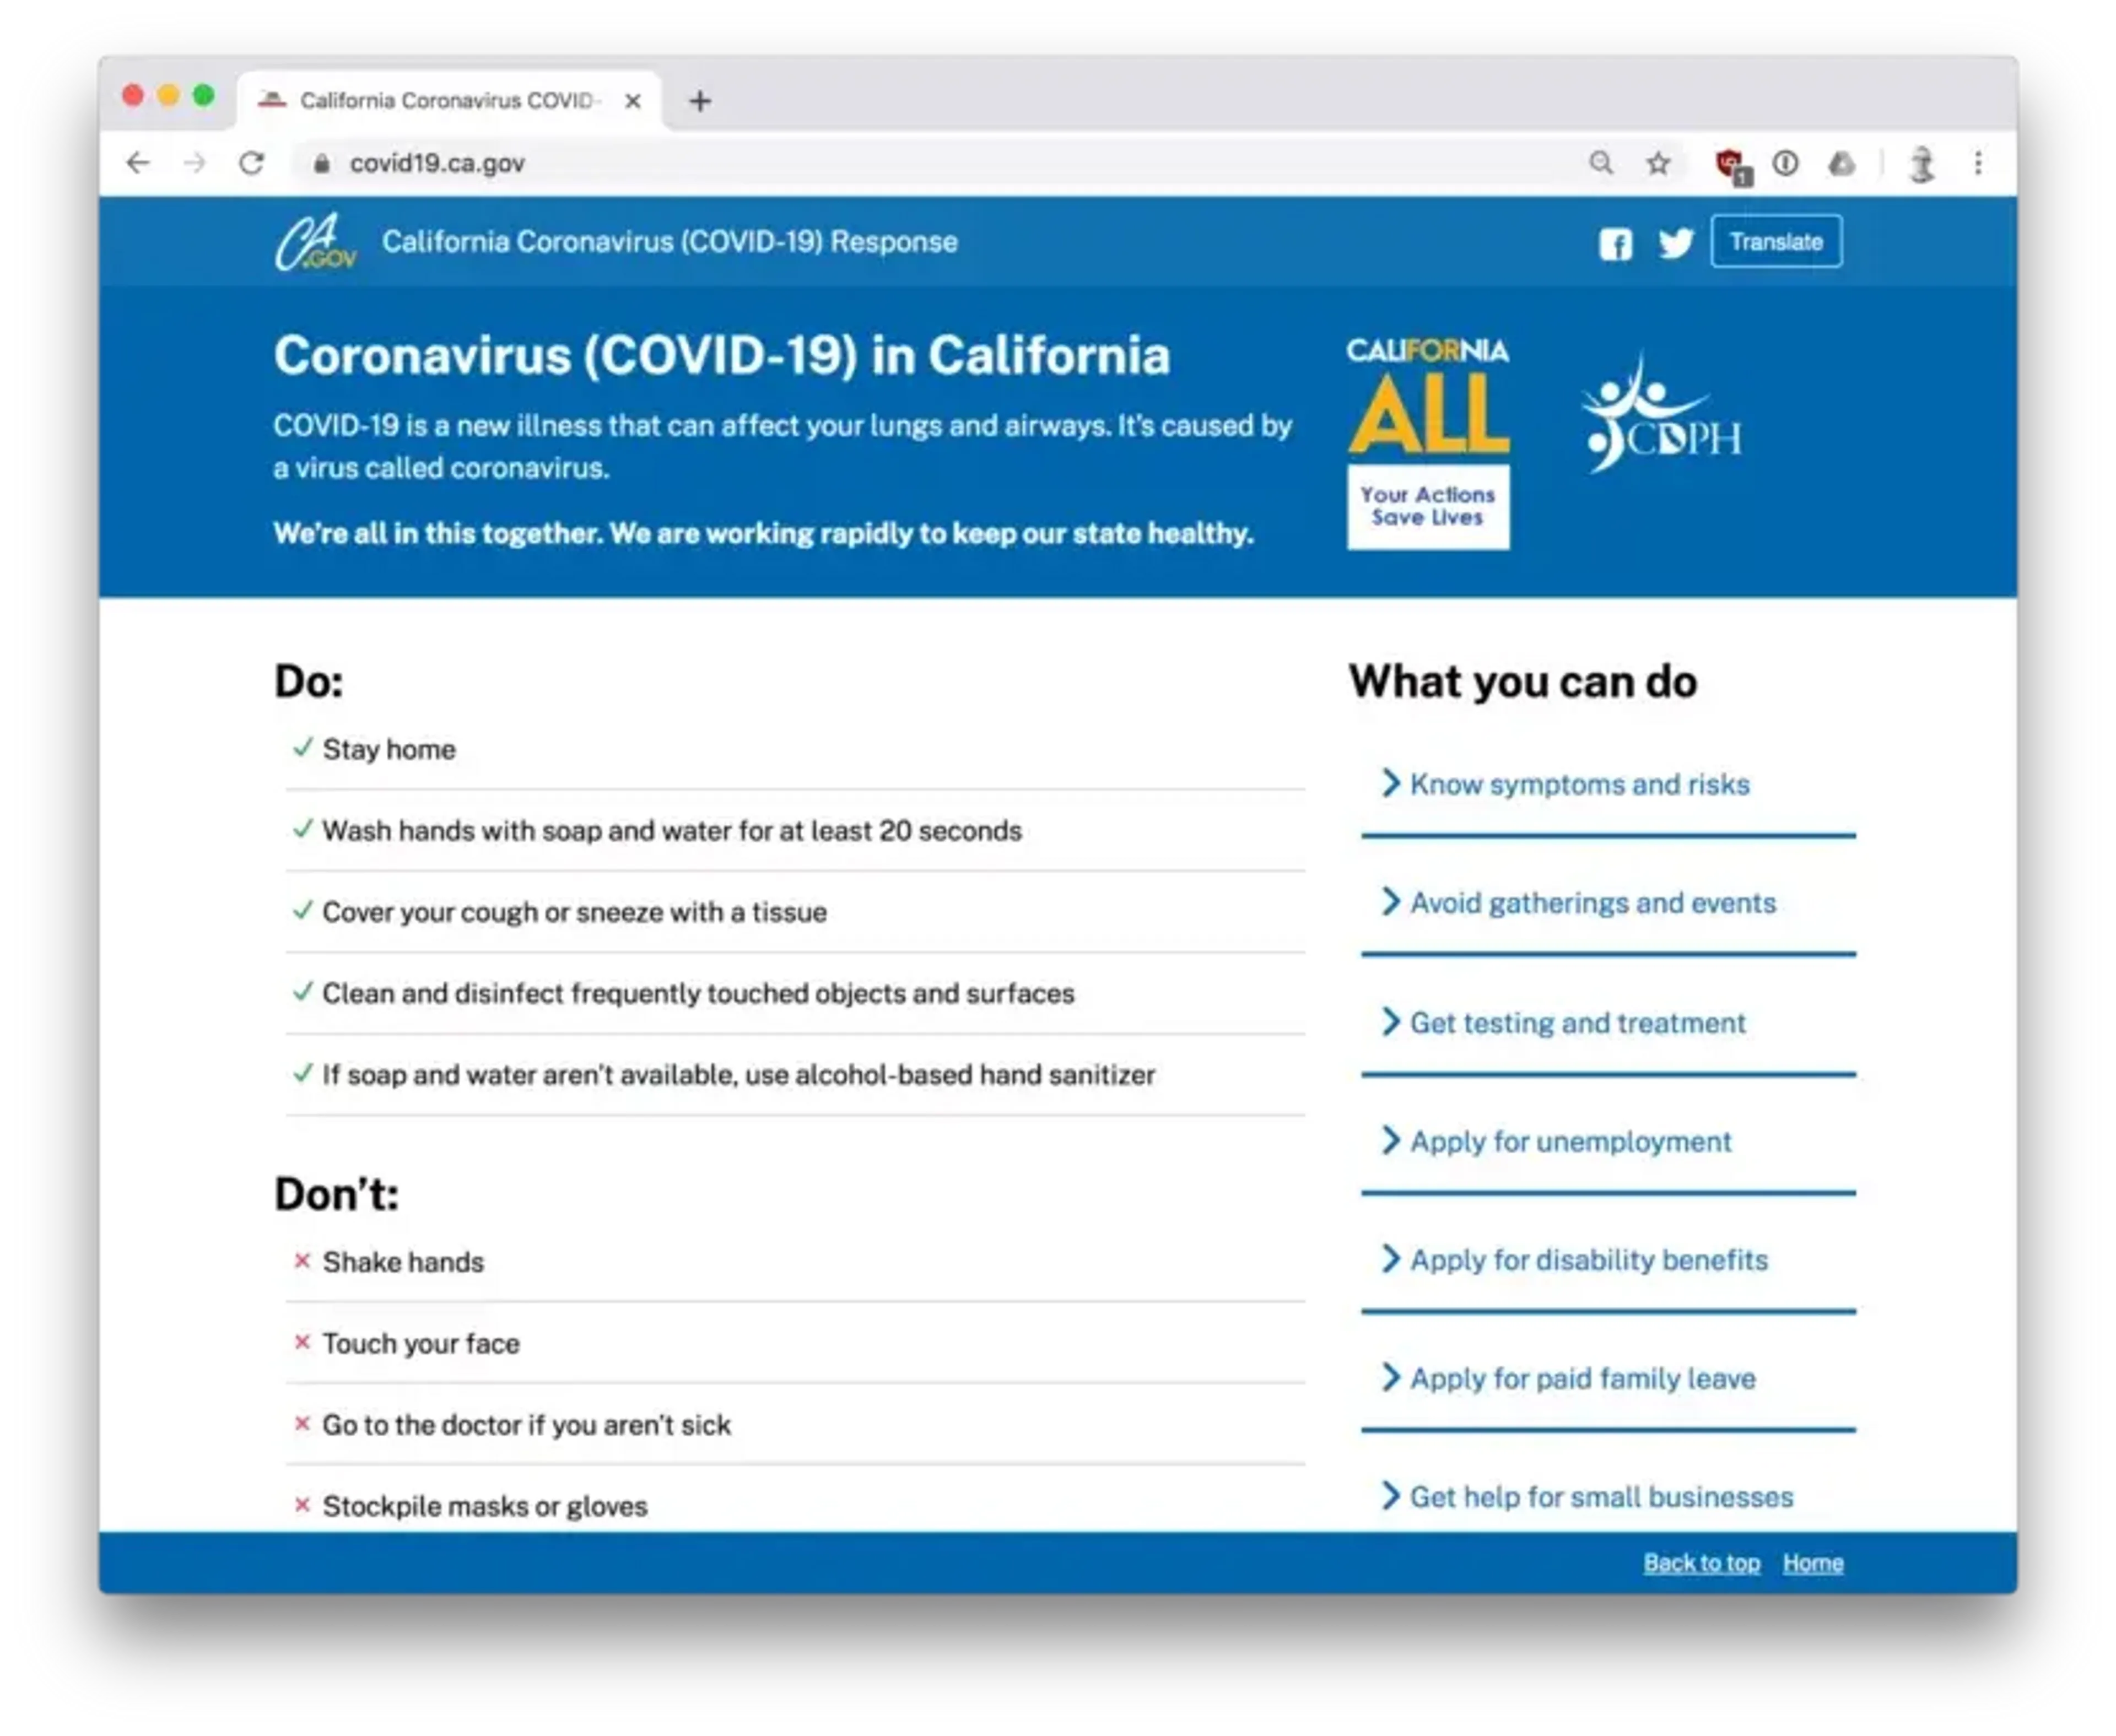 California’s coronavirus website